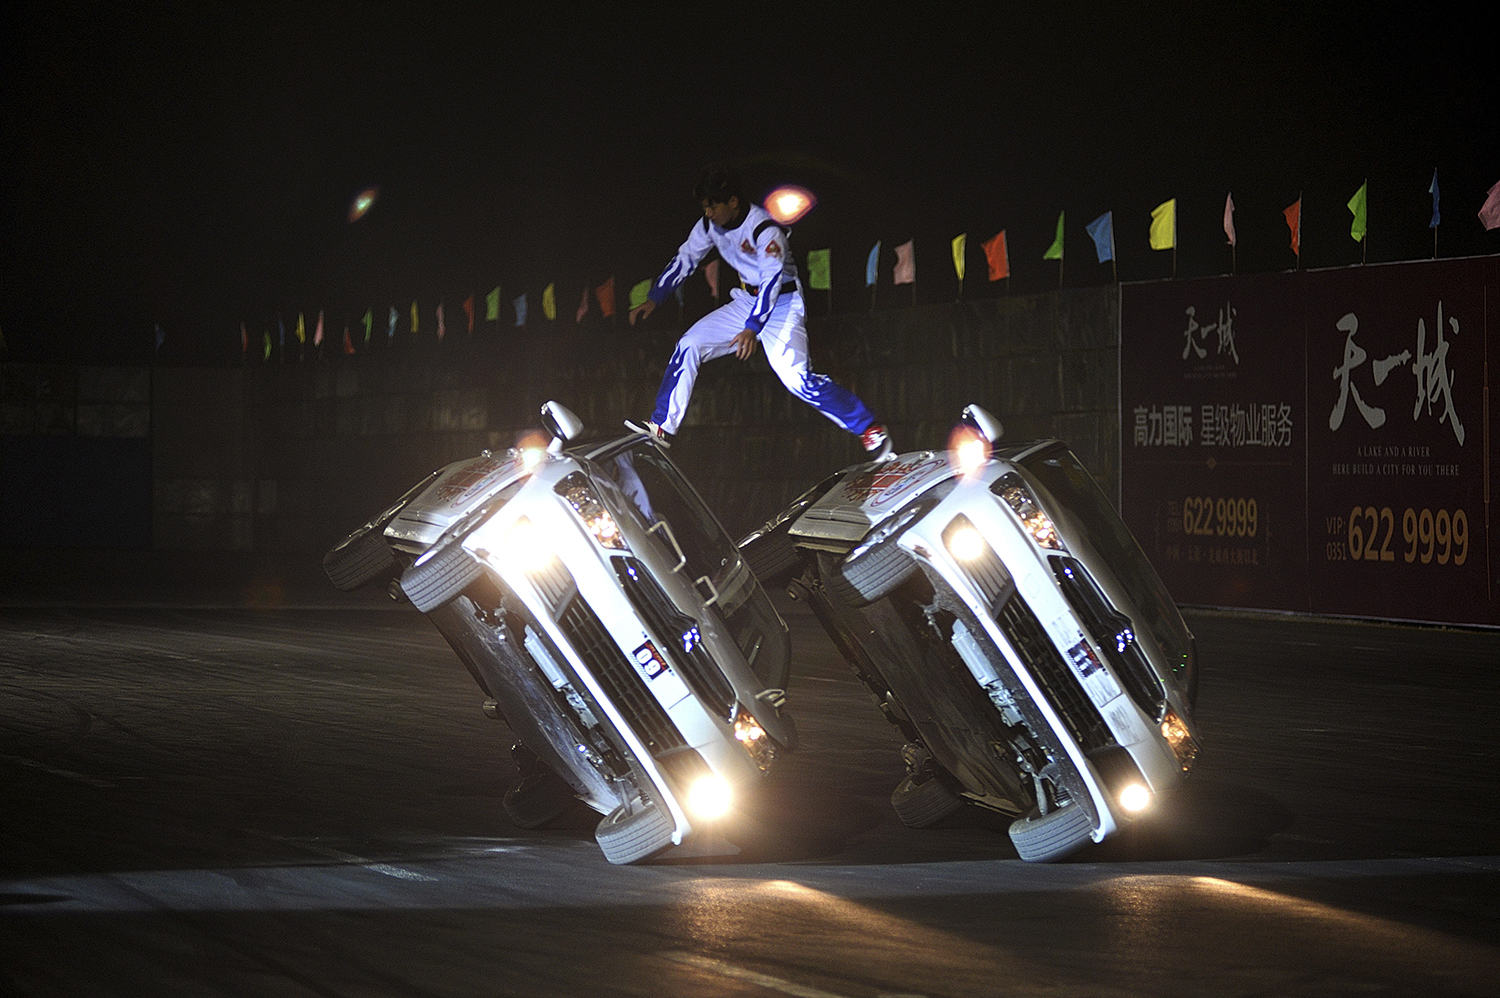 Un doble de acción lleva a cabo una acción de conducción peligrosa en una exhibición. (Foto: China Stringer Network/ Reuters)